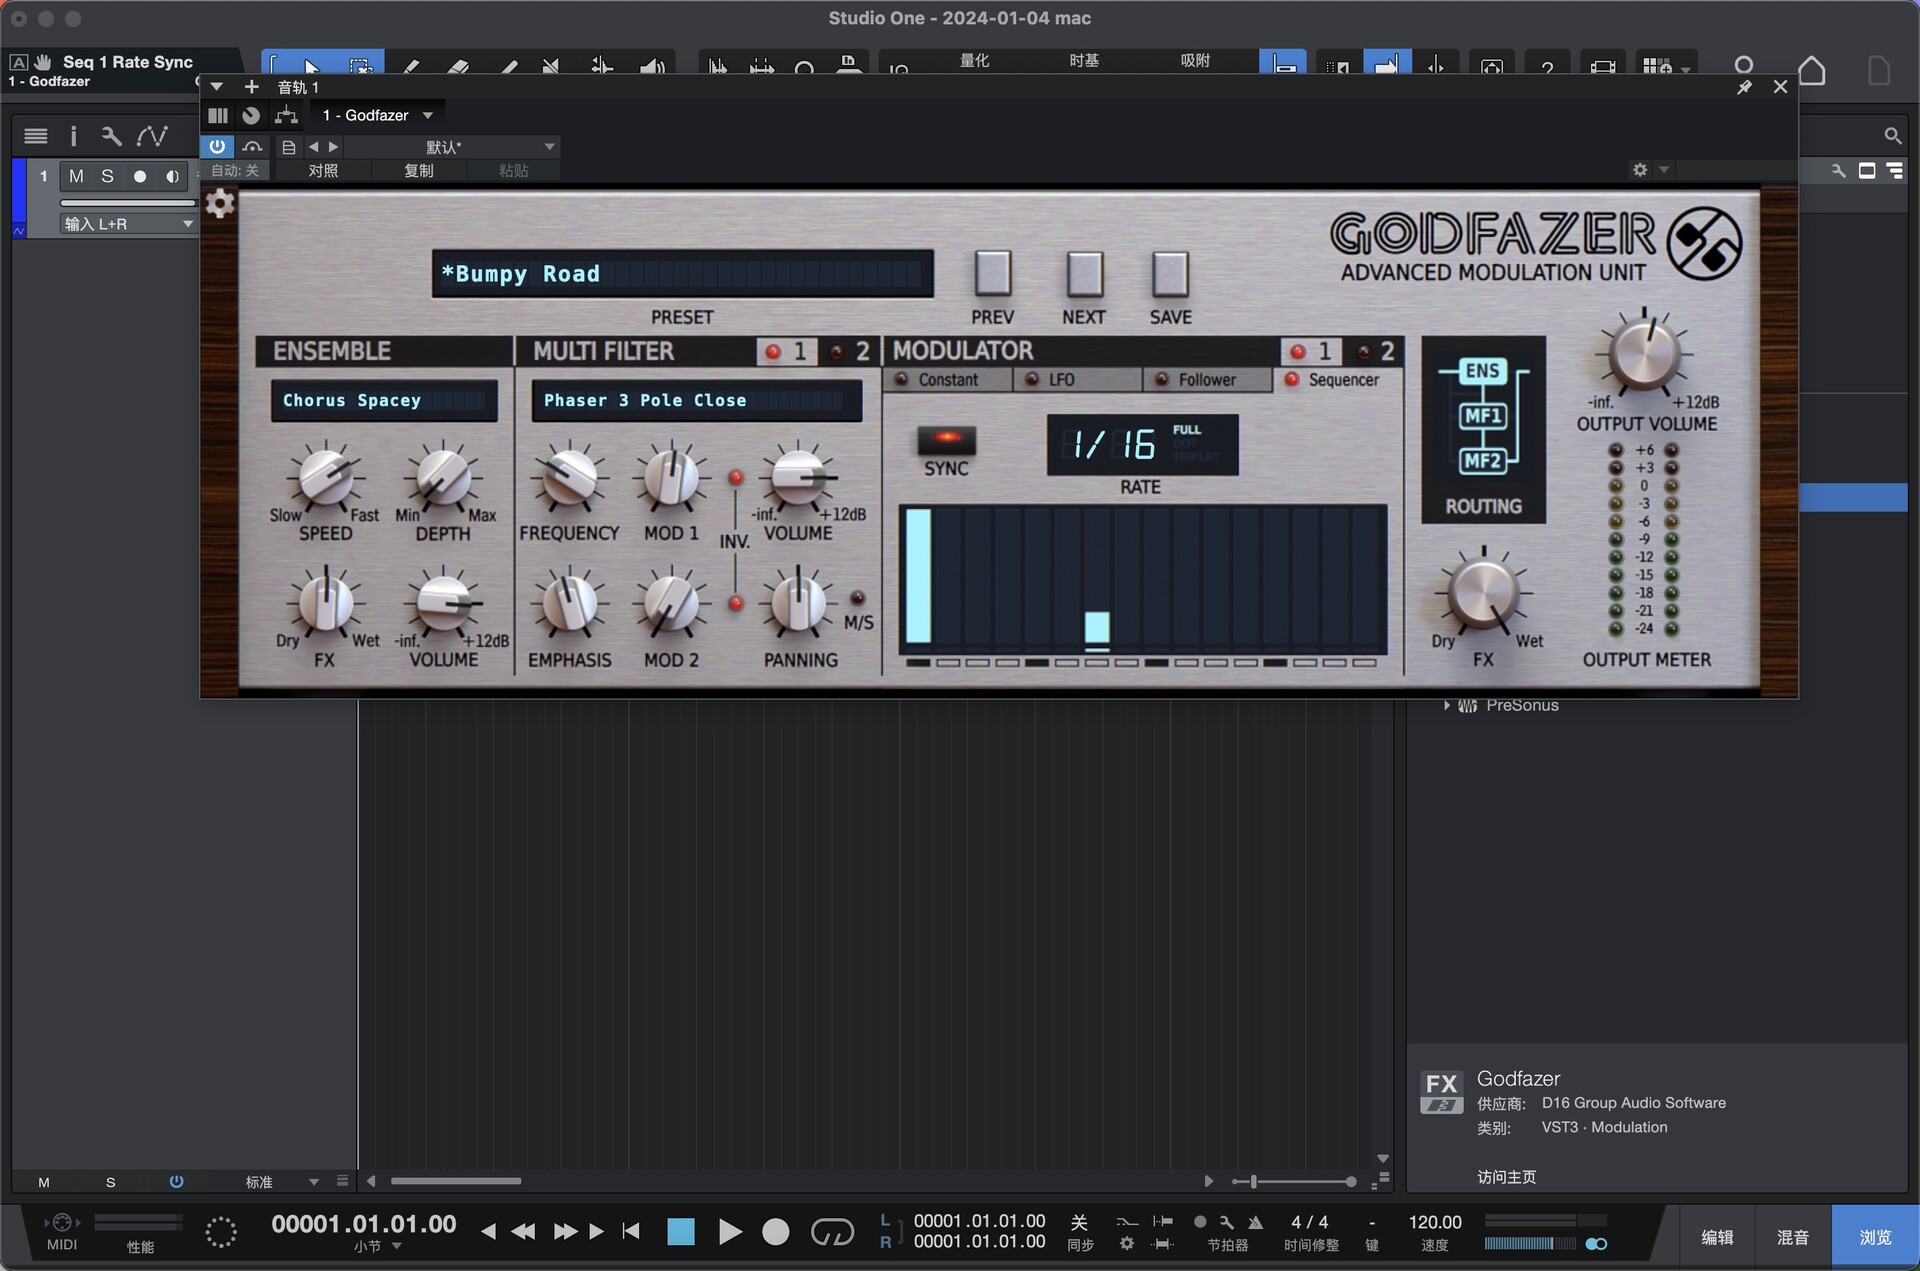 D16 Group Audio Software Godfazer for mac(高级调制器)